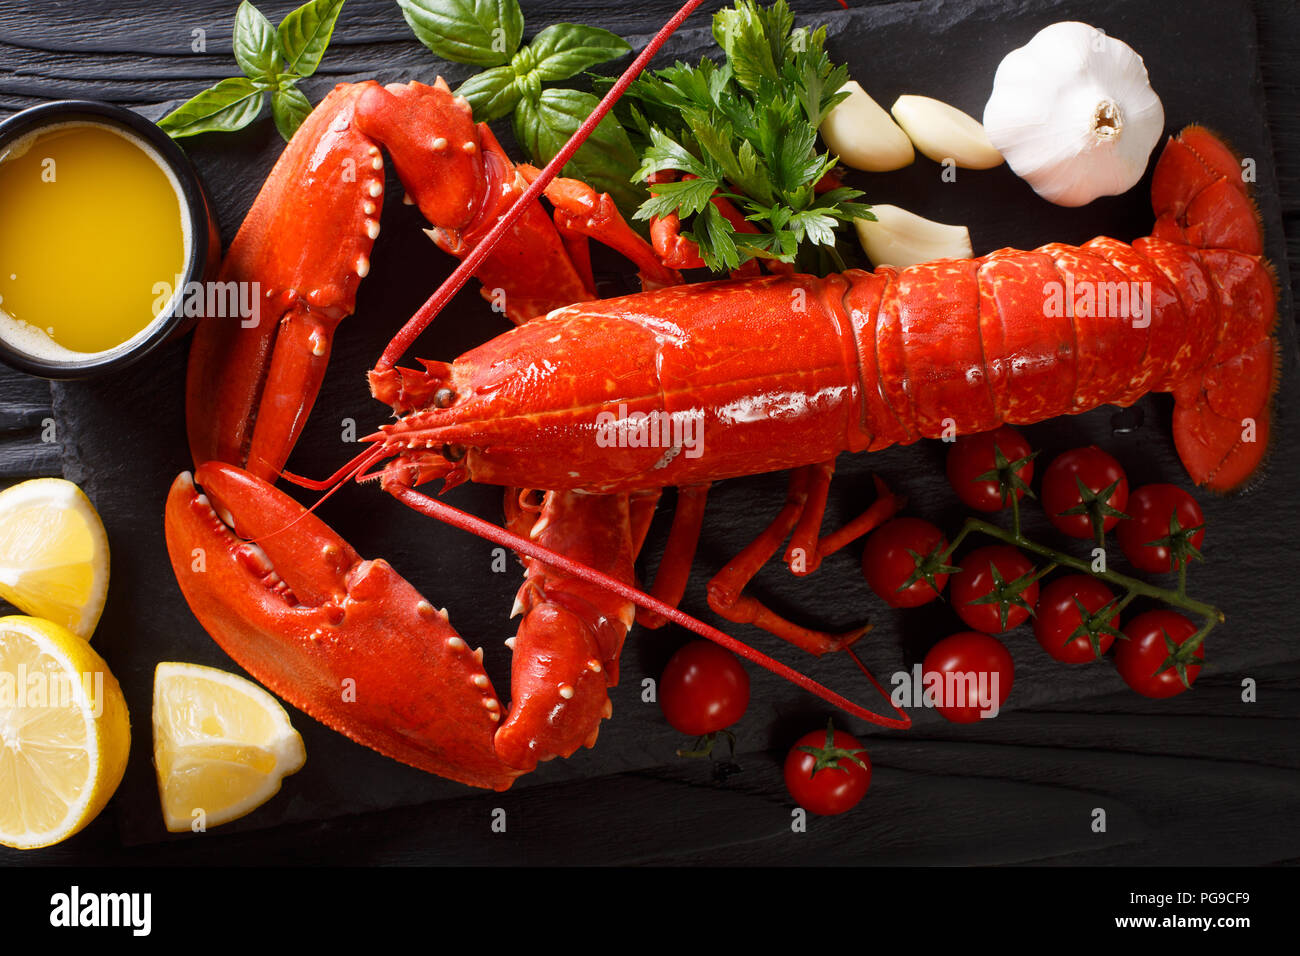 Plaque de crustacés et fruits de mer crustacés homard bouilli avec des légumes et fines herbes avec dîner gastronomique. arrière-plan. Haut horizontale Vue de dessus Banque D'Images